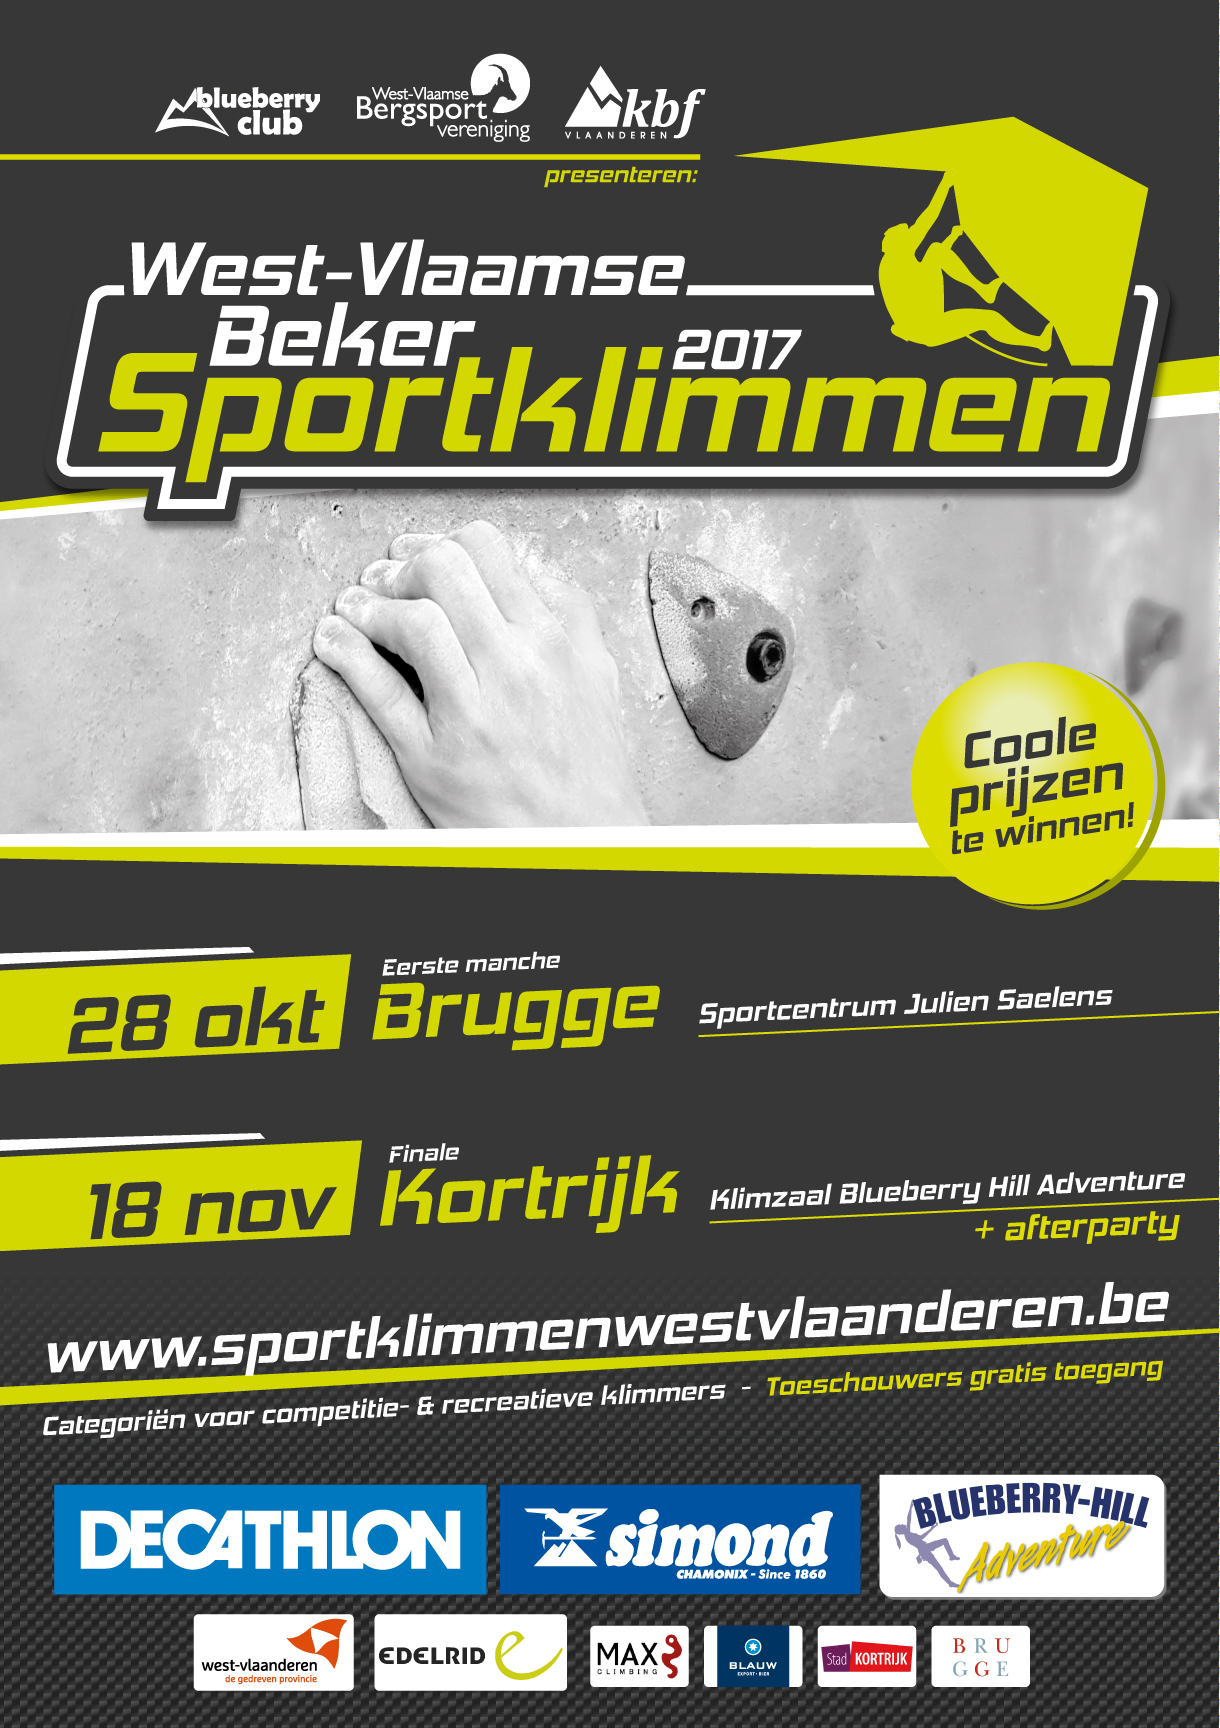 Foto: Sportklimmen West-Vlaanderen